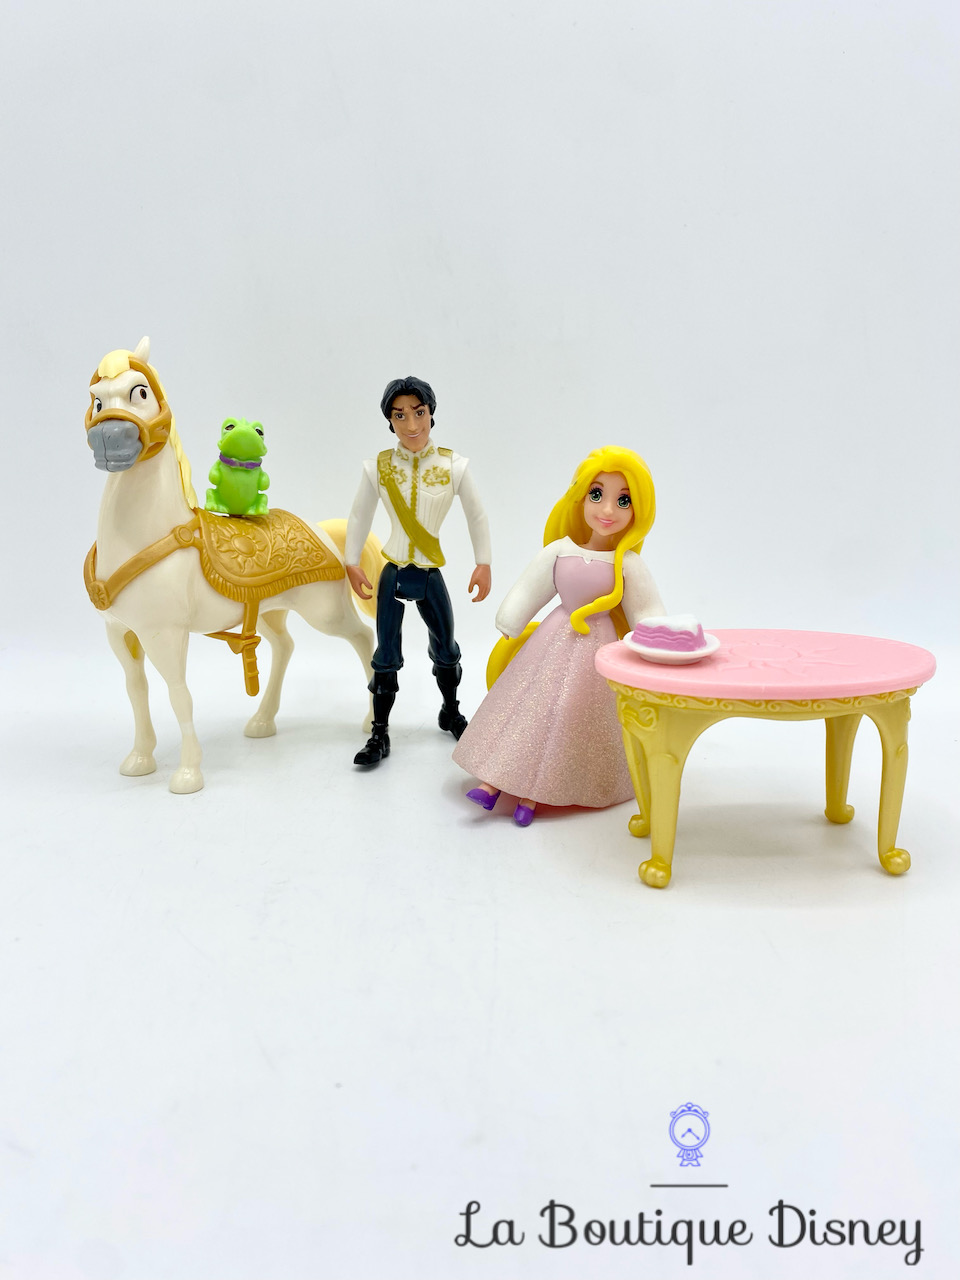 Coffret poupée Raiponce et Maximus - Disney Princesses Mattel